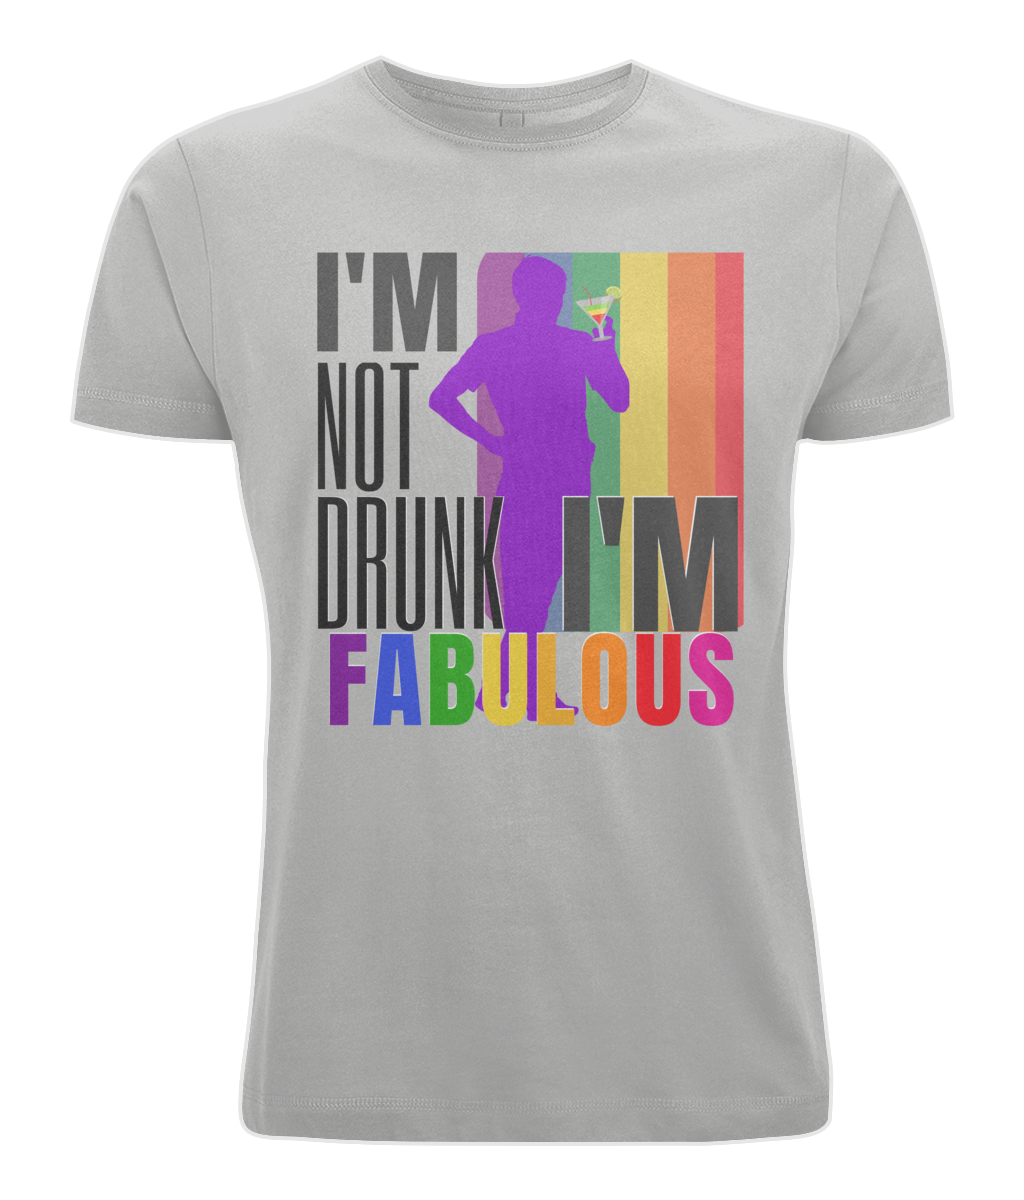 I'm Not Drunk, I'm Fabulous - Unisex Cotton Tee